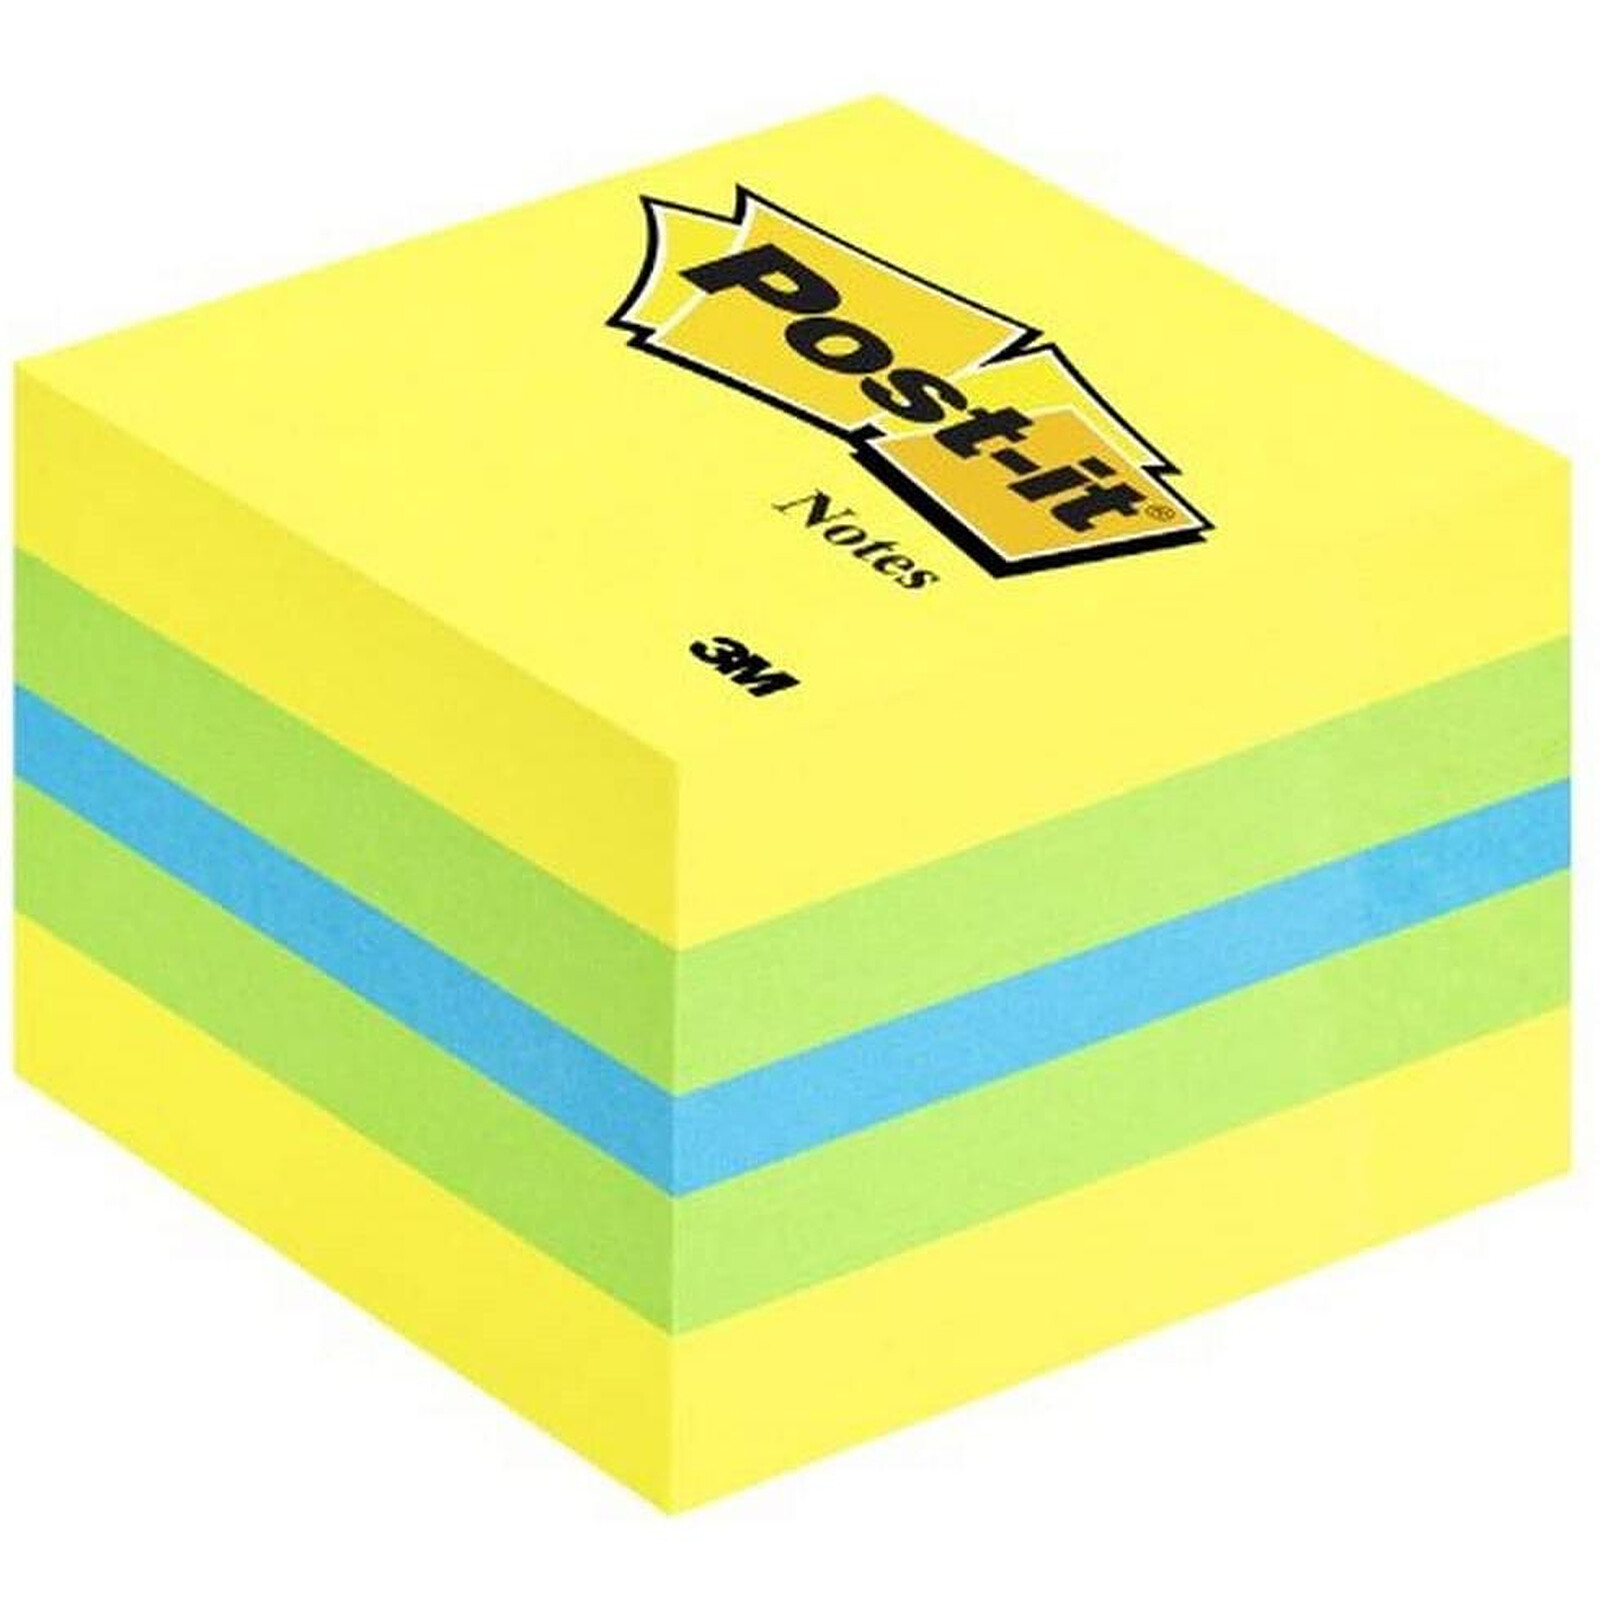 Pack Post-it 12 blocs Super Sticky Z-Notes colorés avec